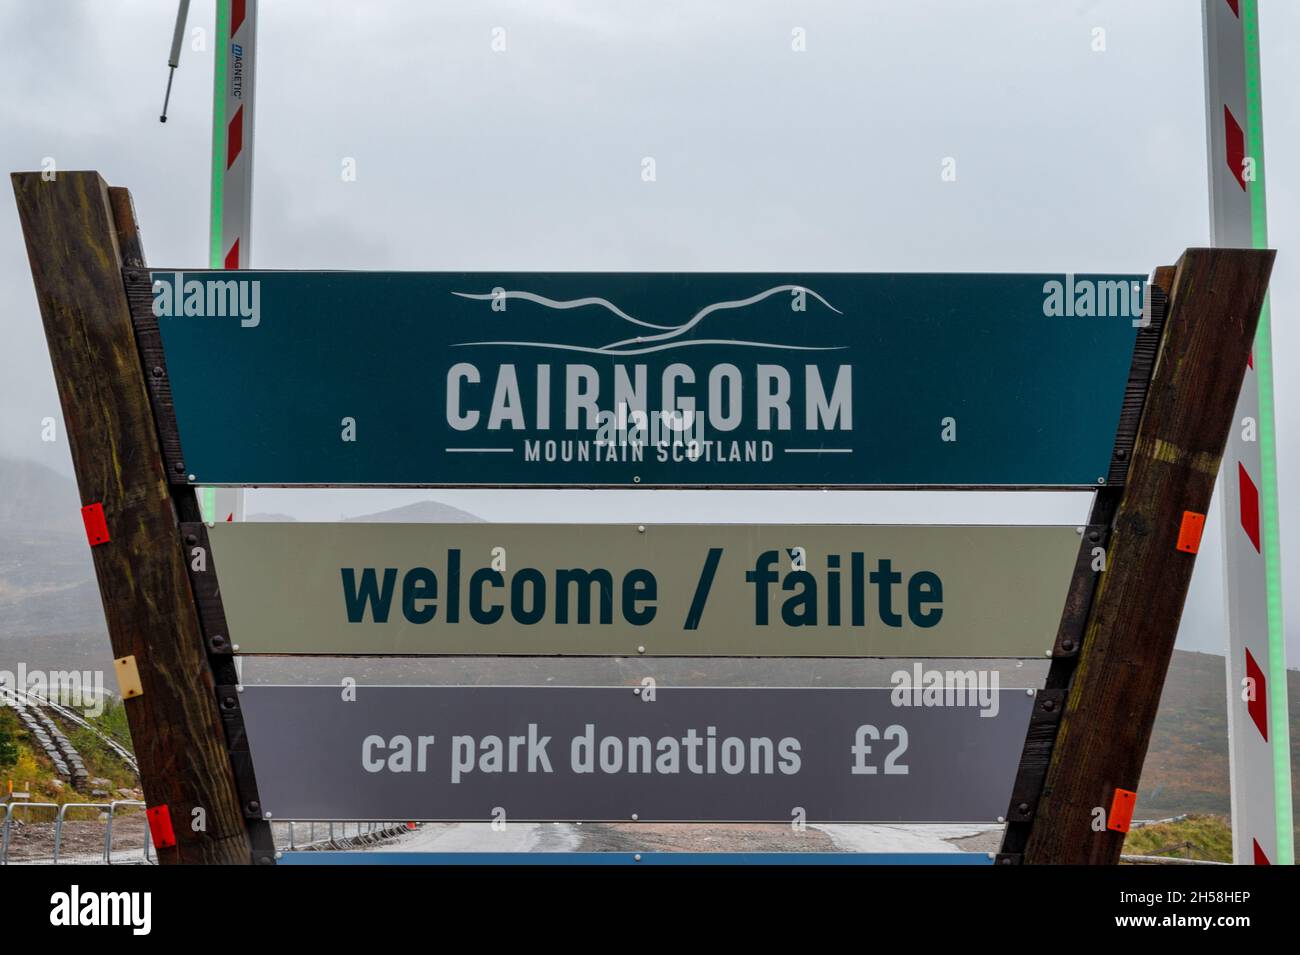 Cairngorm, Escocia- 18 de octubre de 2021: La señal principal para Cairngorm Mountain Scotland en la entrada al aparcamiento del hotel de esquí Foto de stock